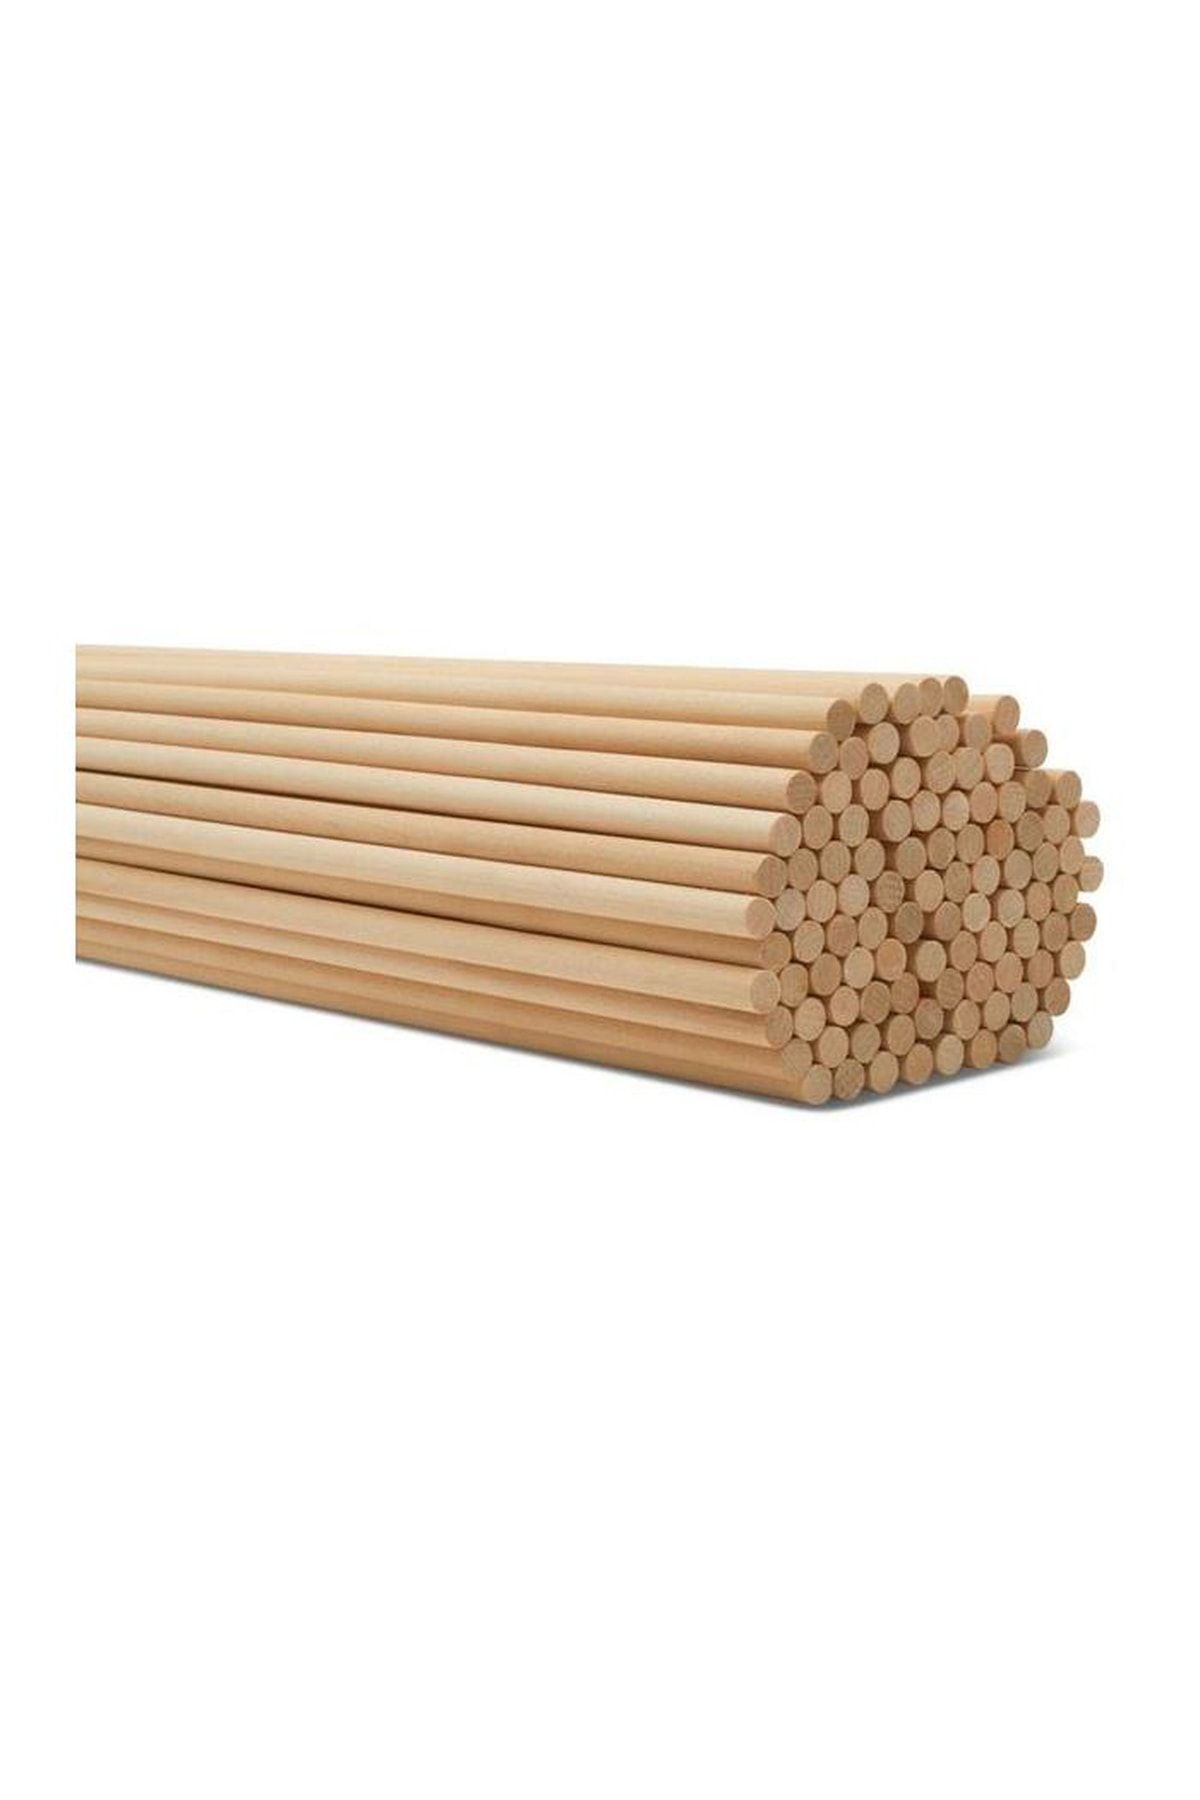 ncy Bambu Yuvarlak Ahşap Maket Çubukları 35 Cm 100 Adet 5 Mm